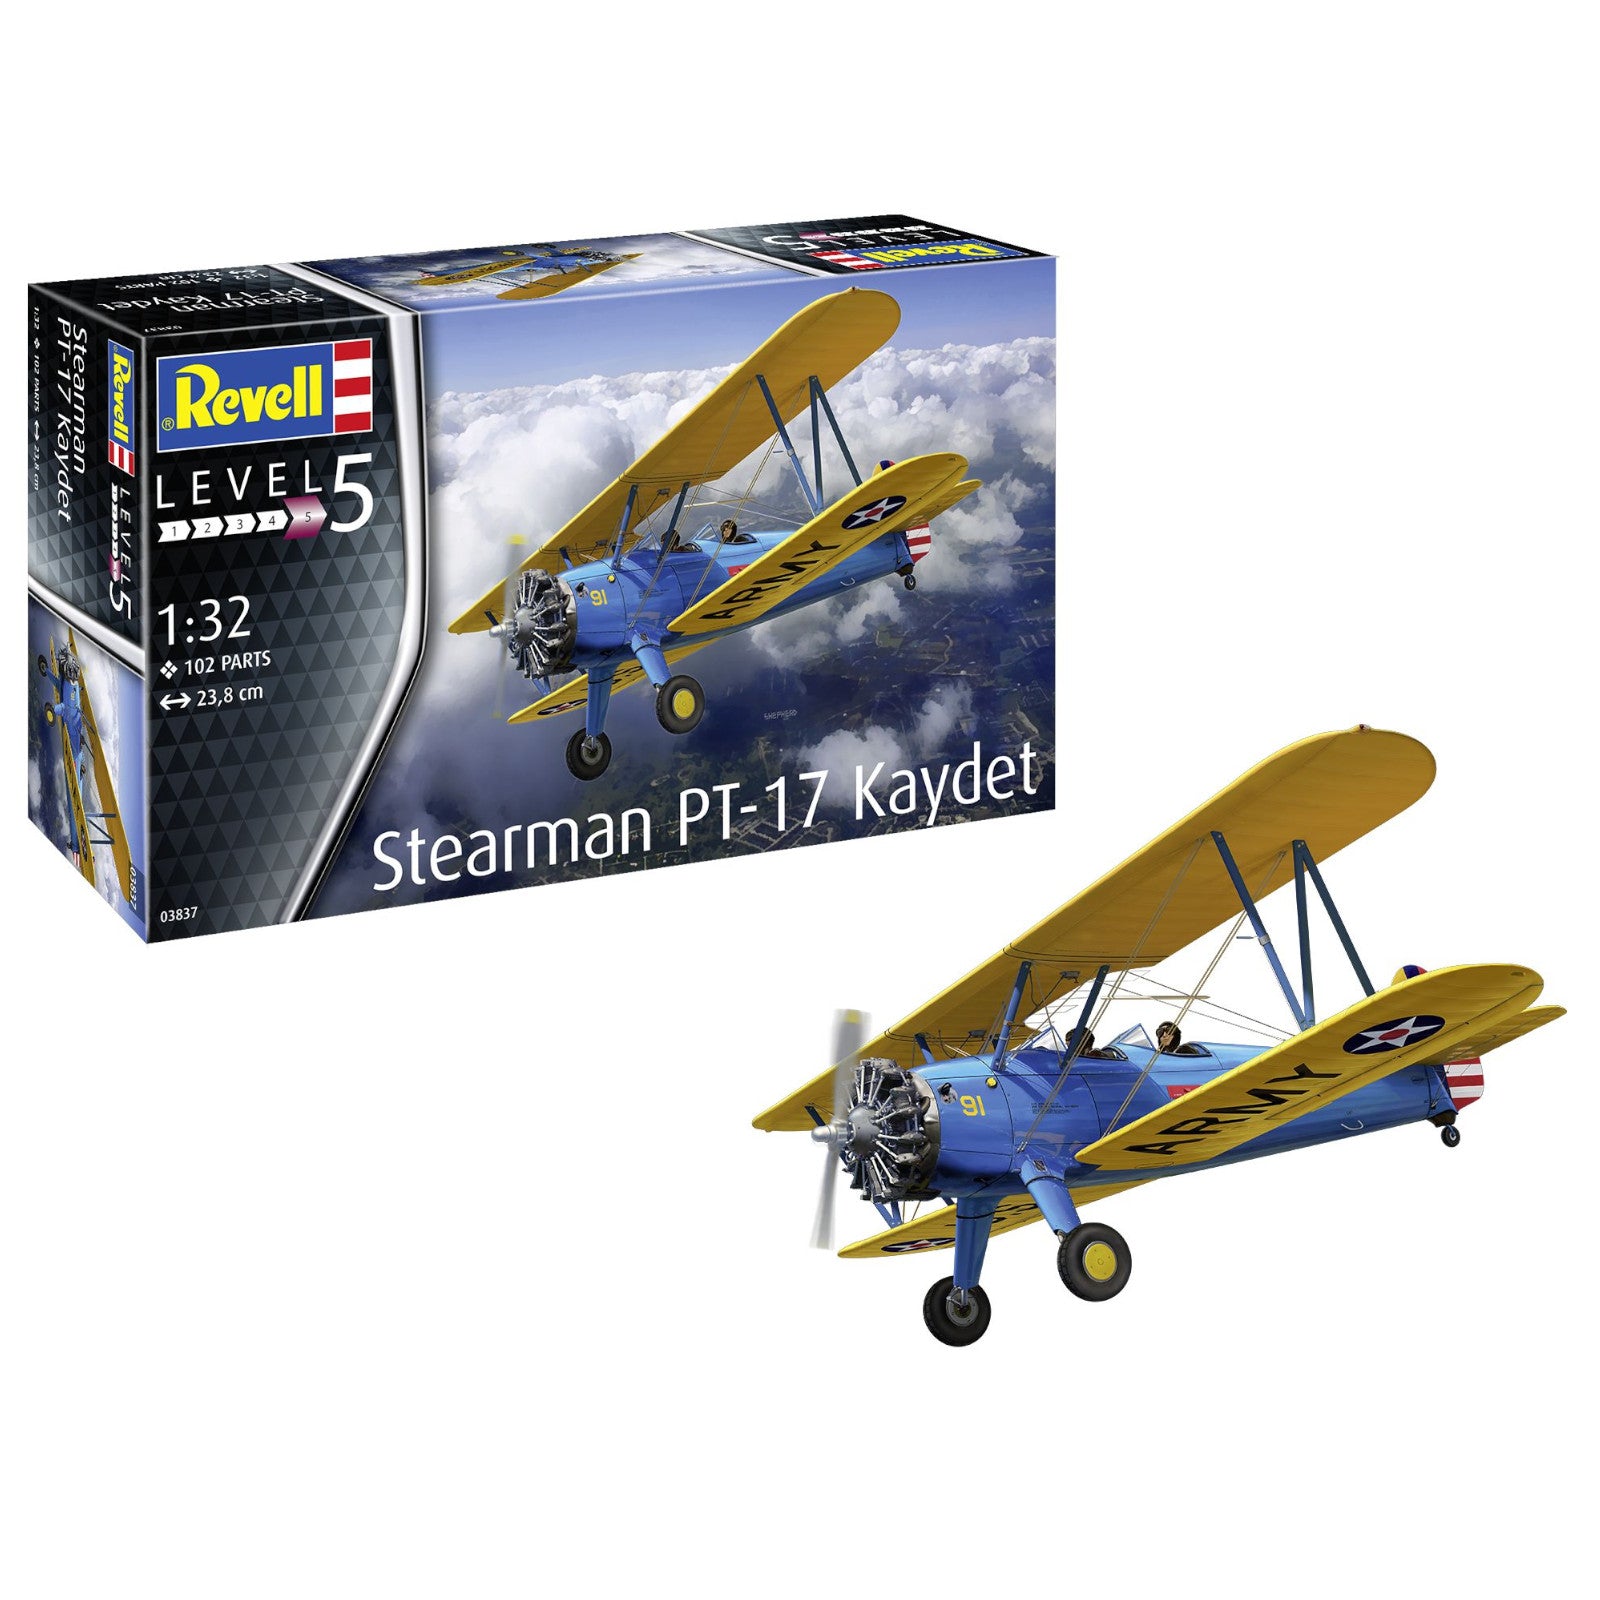 Revell Stearman PT-17 Kaydet 1:32 Plane Model Kit